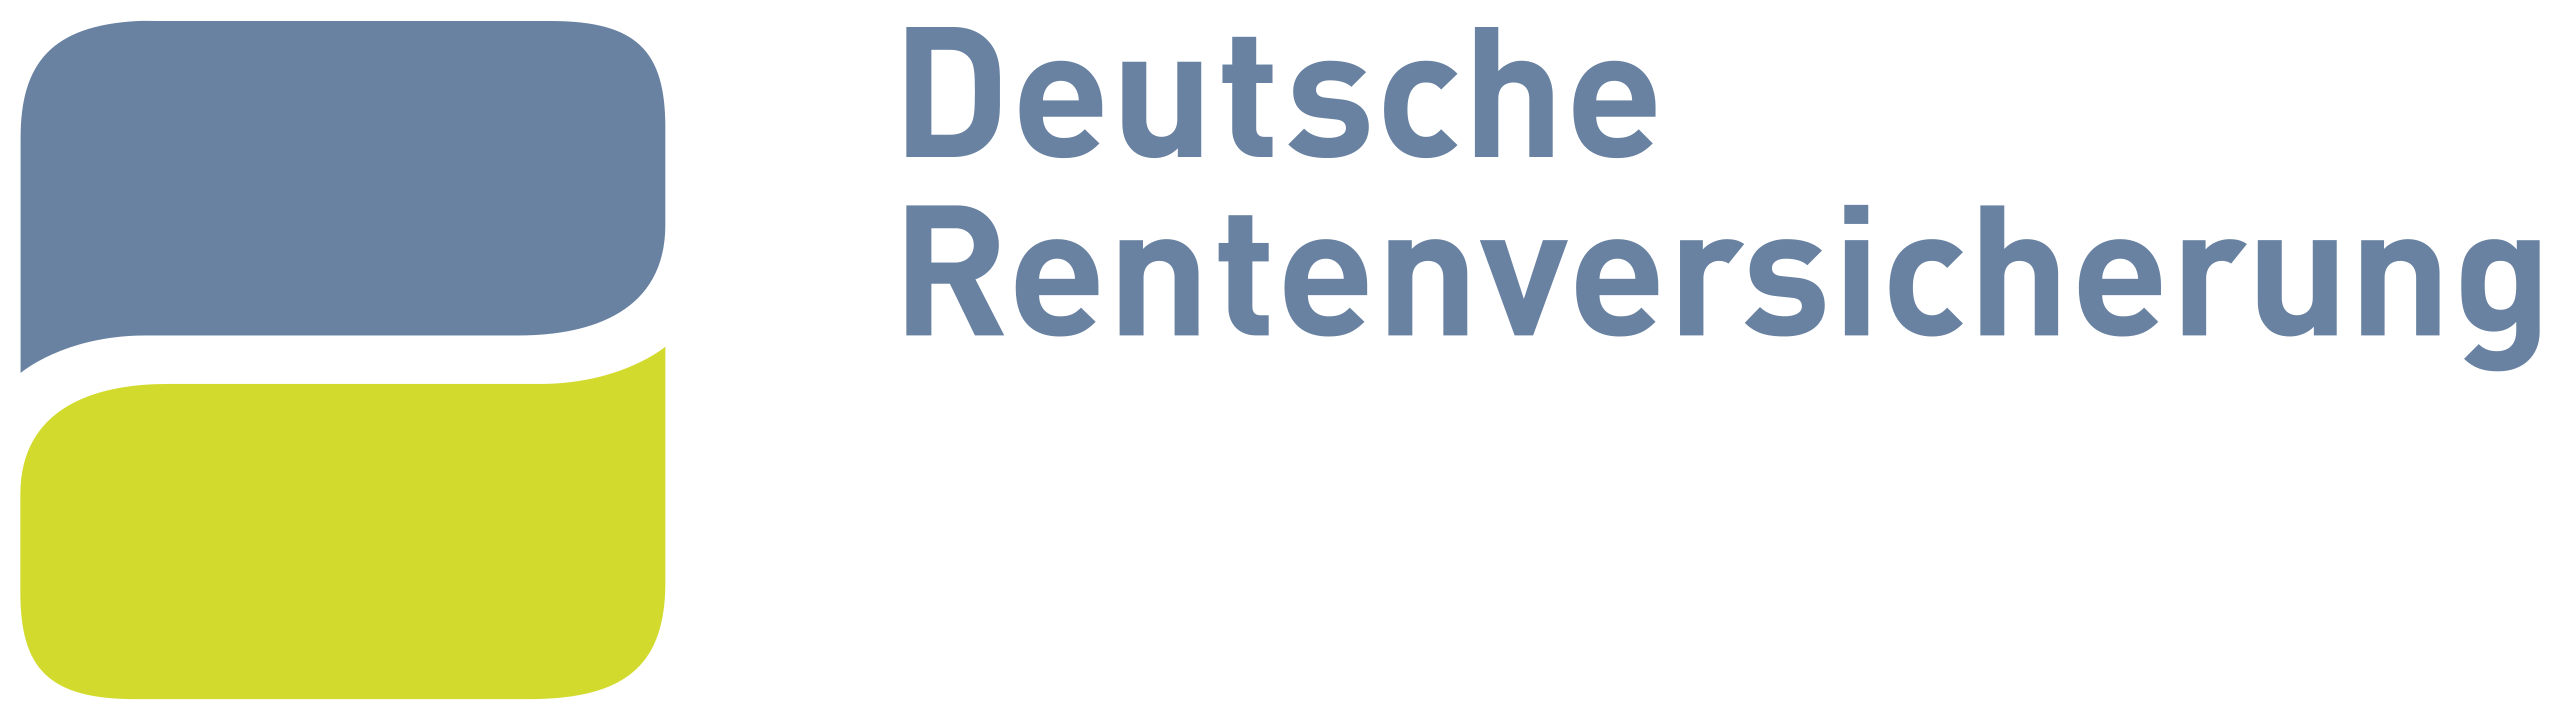 2560px-Deutsche_Rentenversicherung_logo.svg